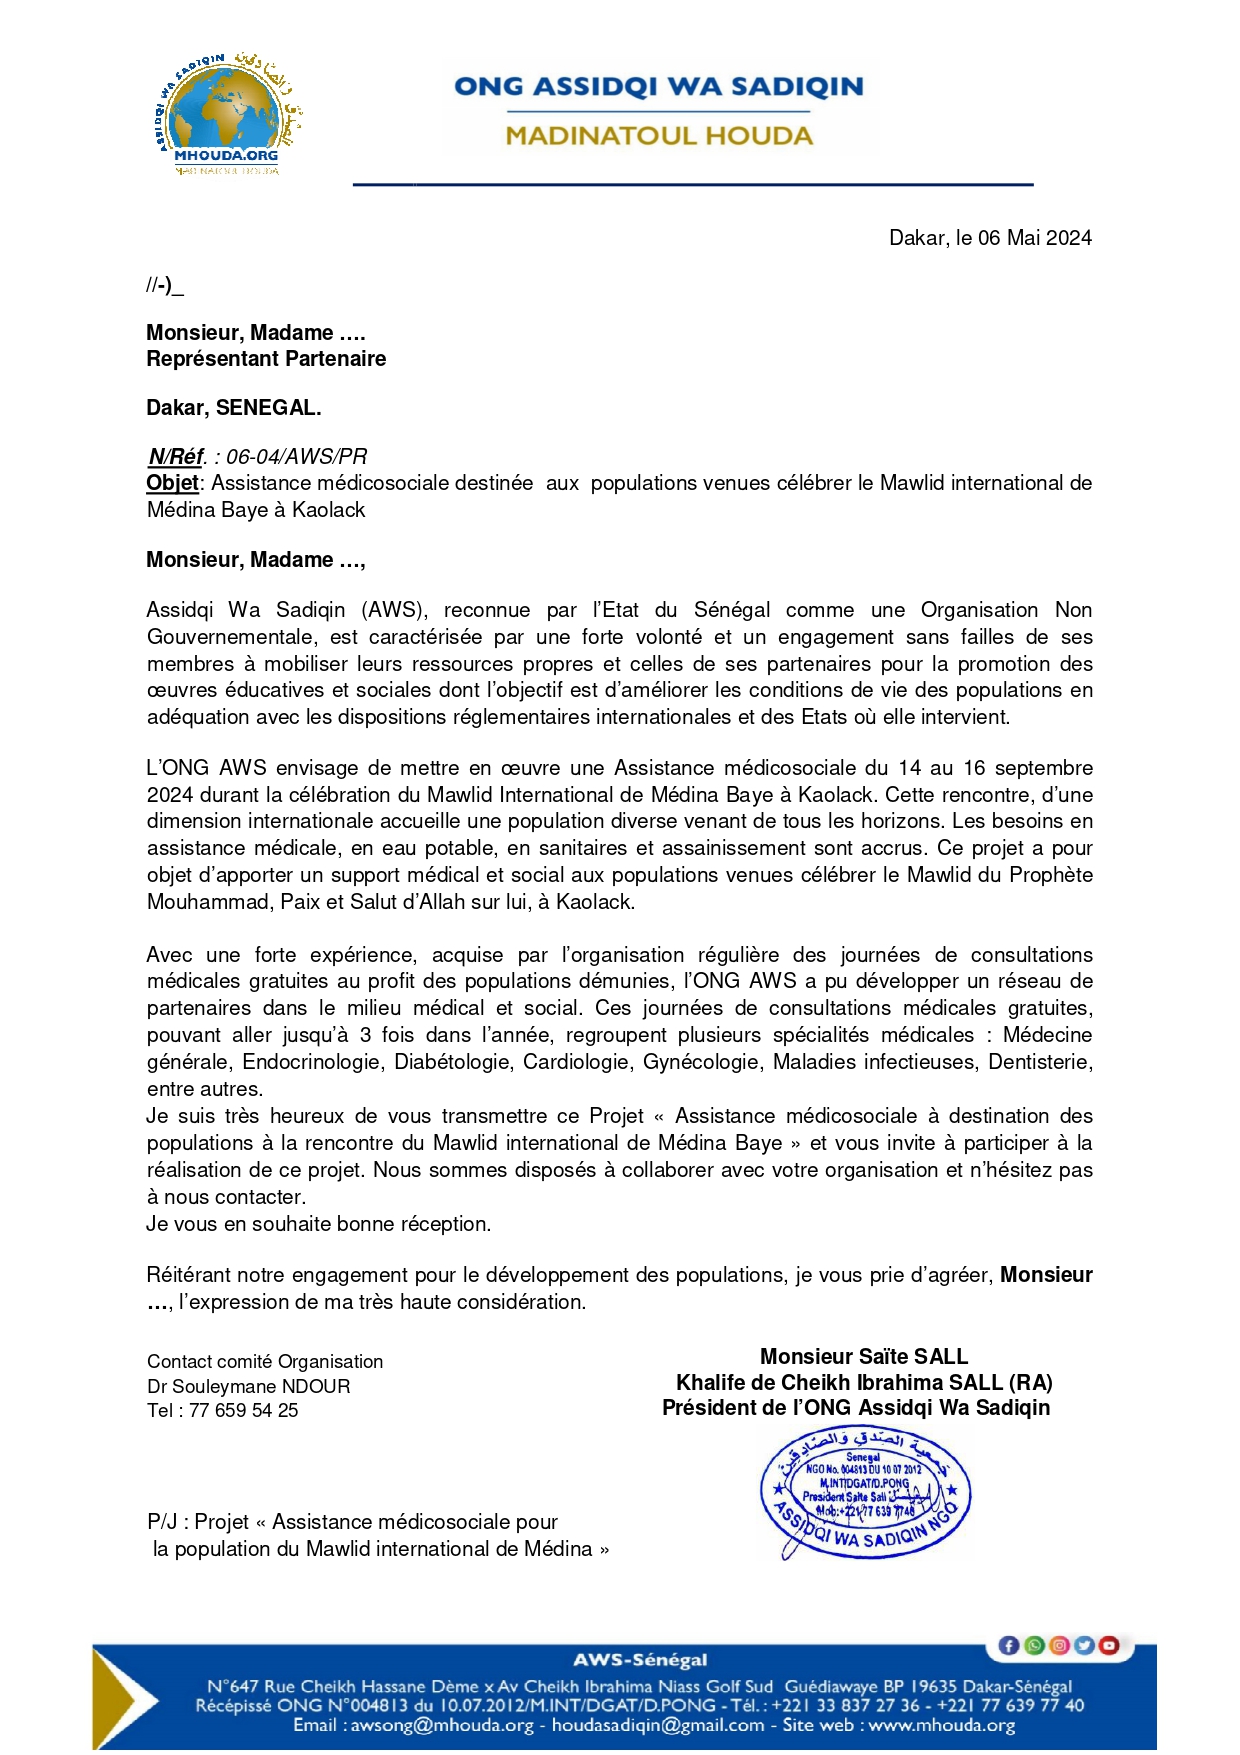 ONG AWS -Courrier de transmission du Projet Assistance médicosociale du Gamou de Médina Baye 2024_Partenaires Final_page-0001